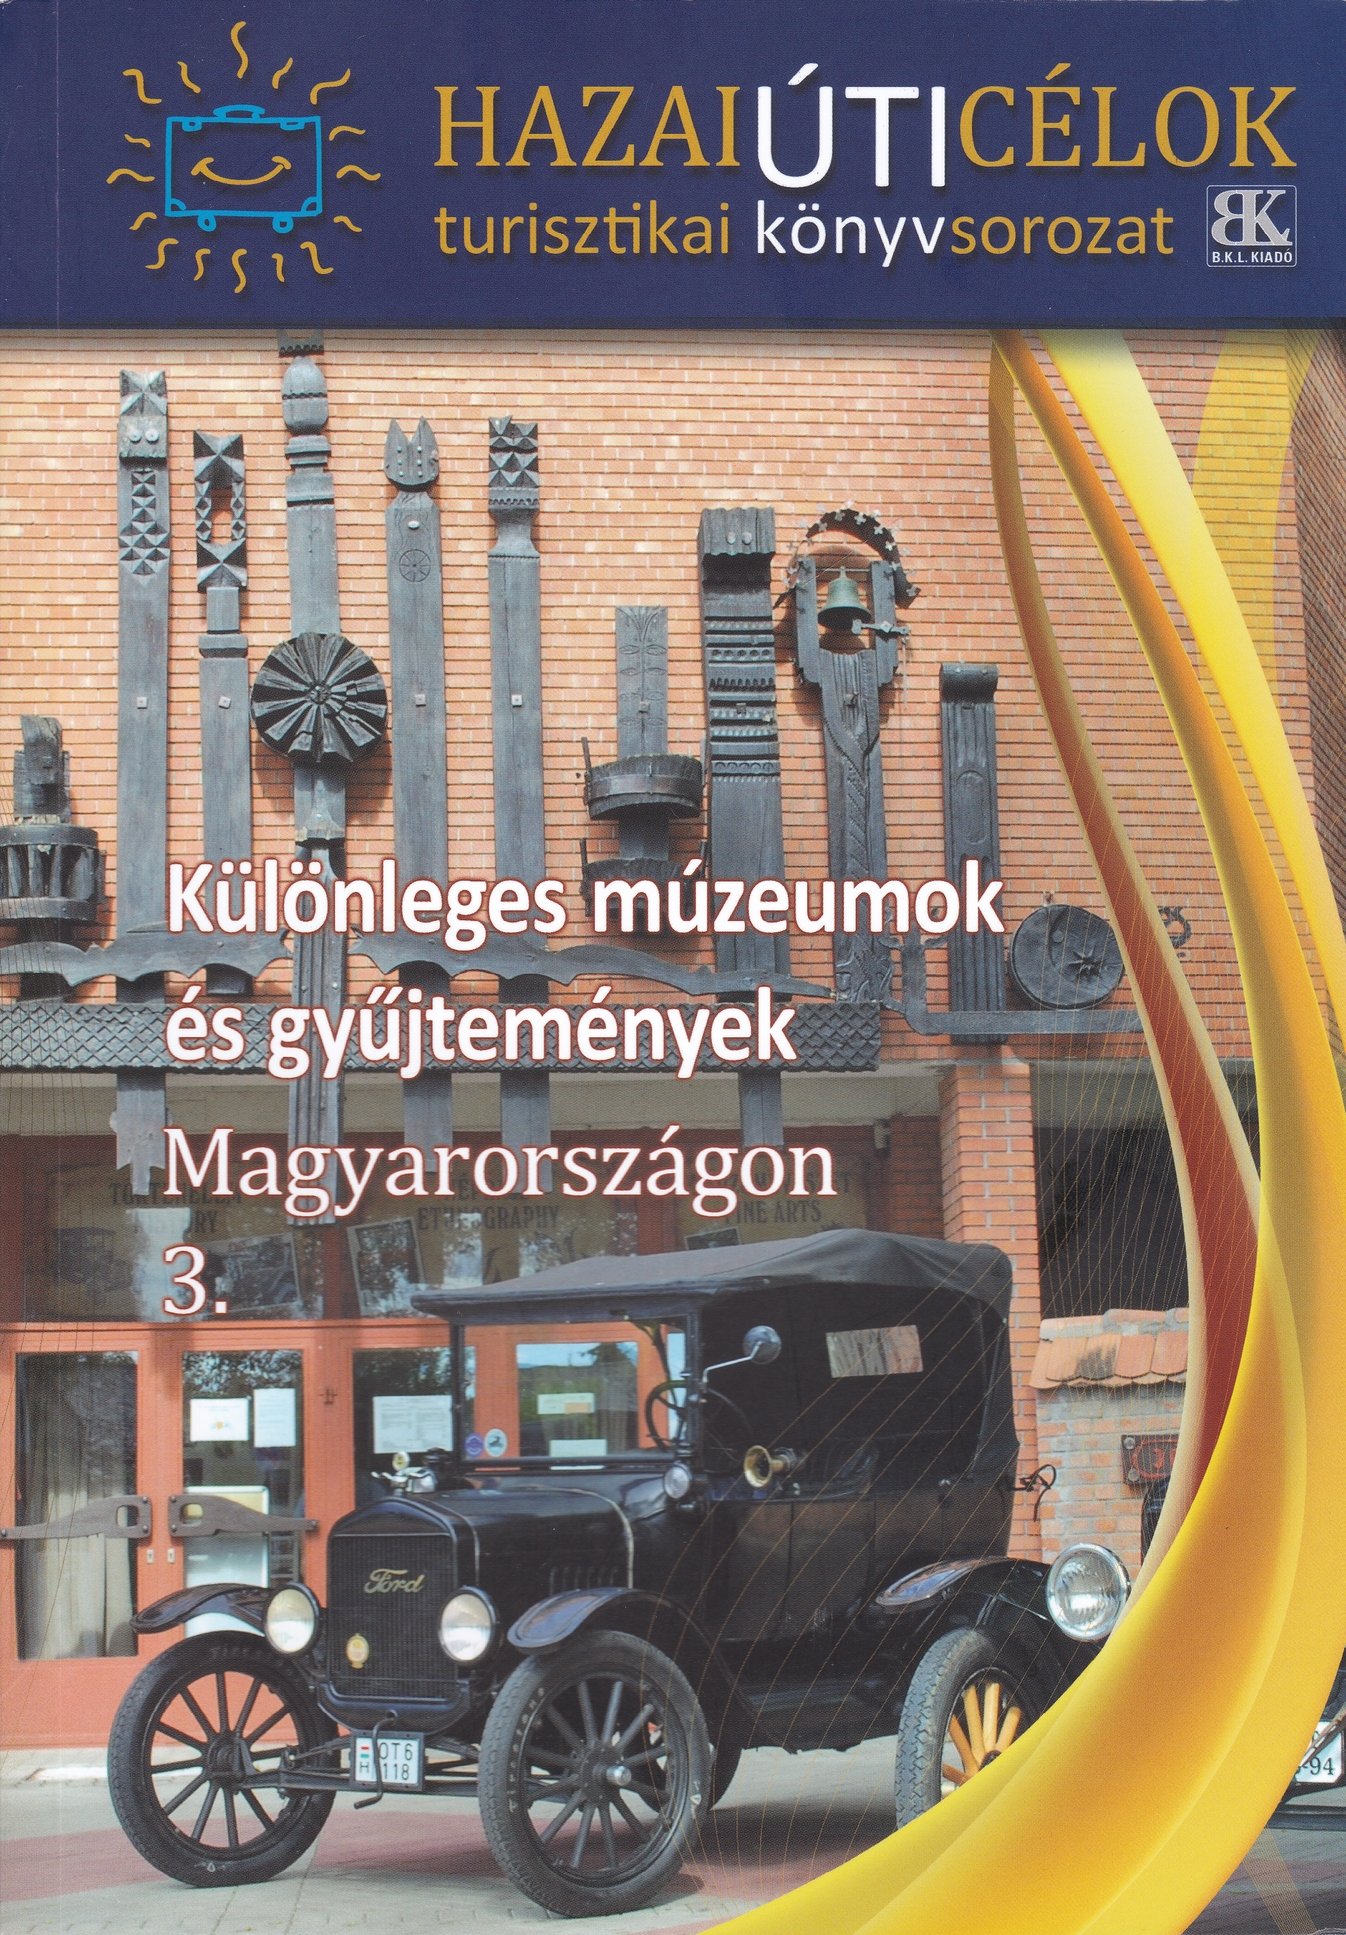 Hazai úti célok 7. - Különleges múzeumok és gyűjtemények Magyarországon 3. (Rippl-Rónai Múzeum CC BY-NC-ND)